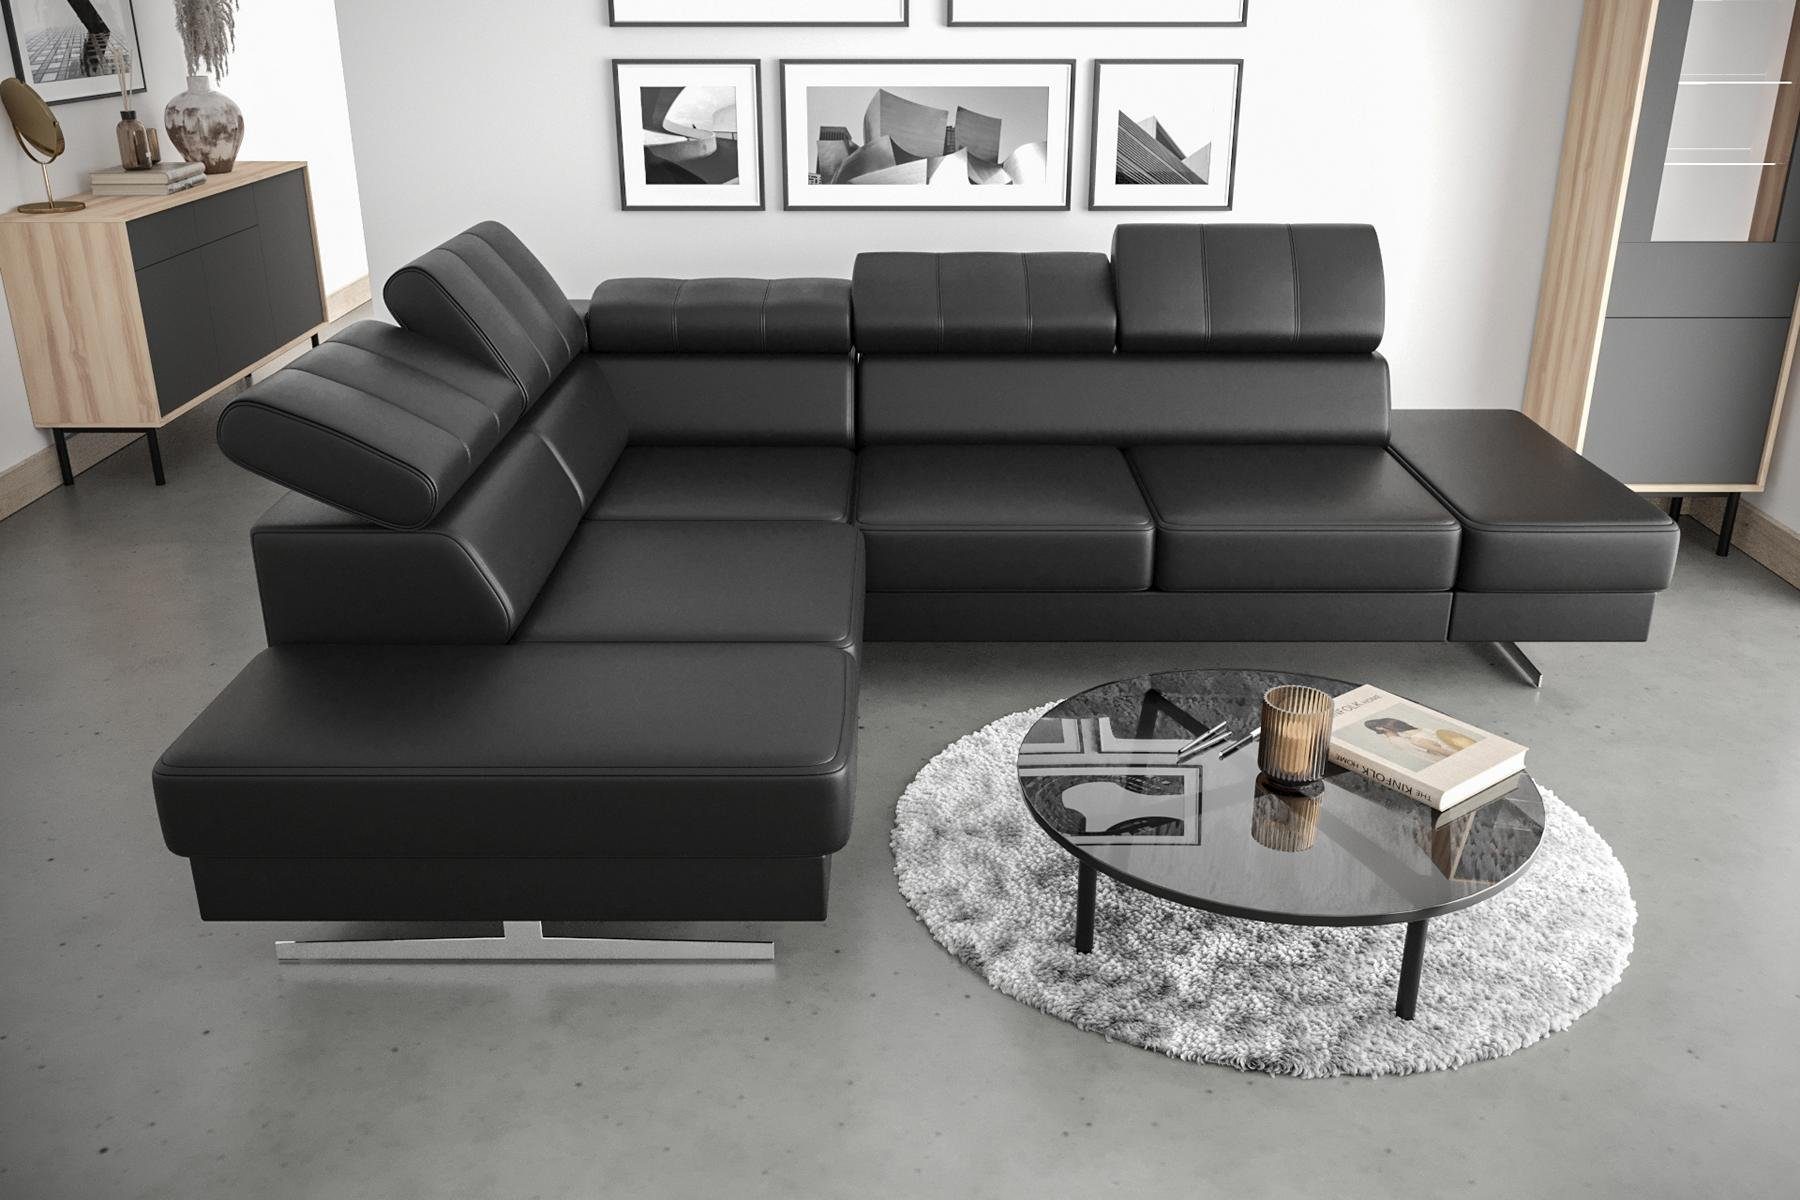 Schwarz JVmoebel Polsterung Luxus Ecksofa, Couch Design L Möbel Ecksofa Textil Form Sofa